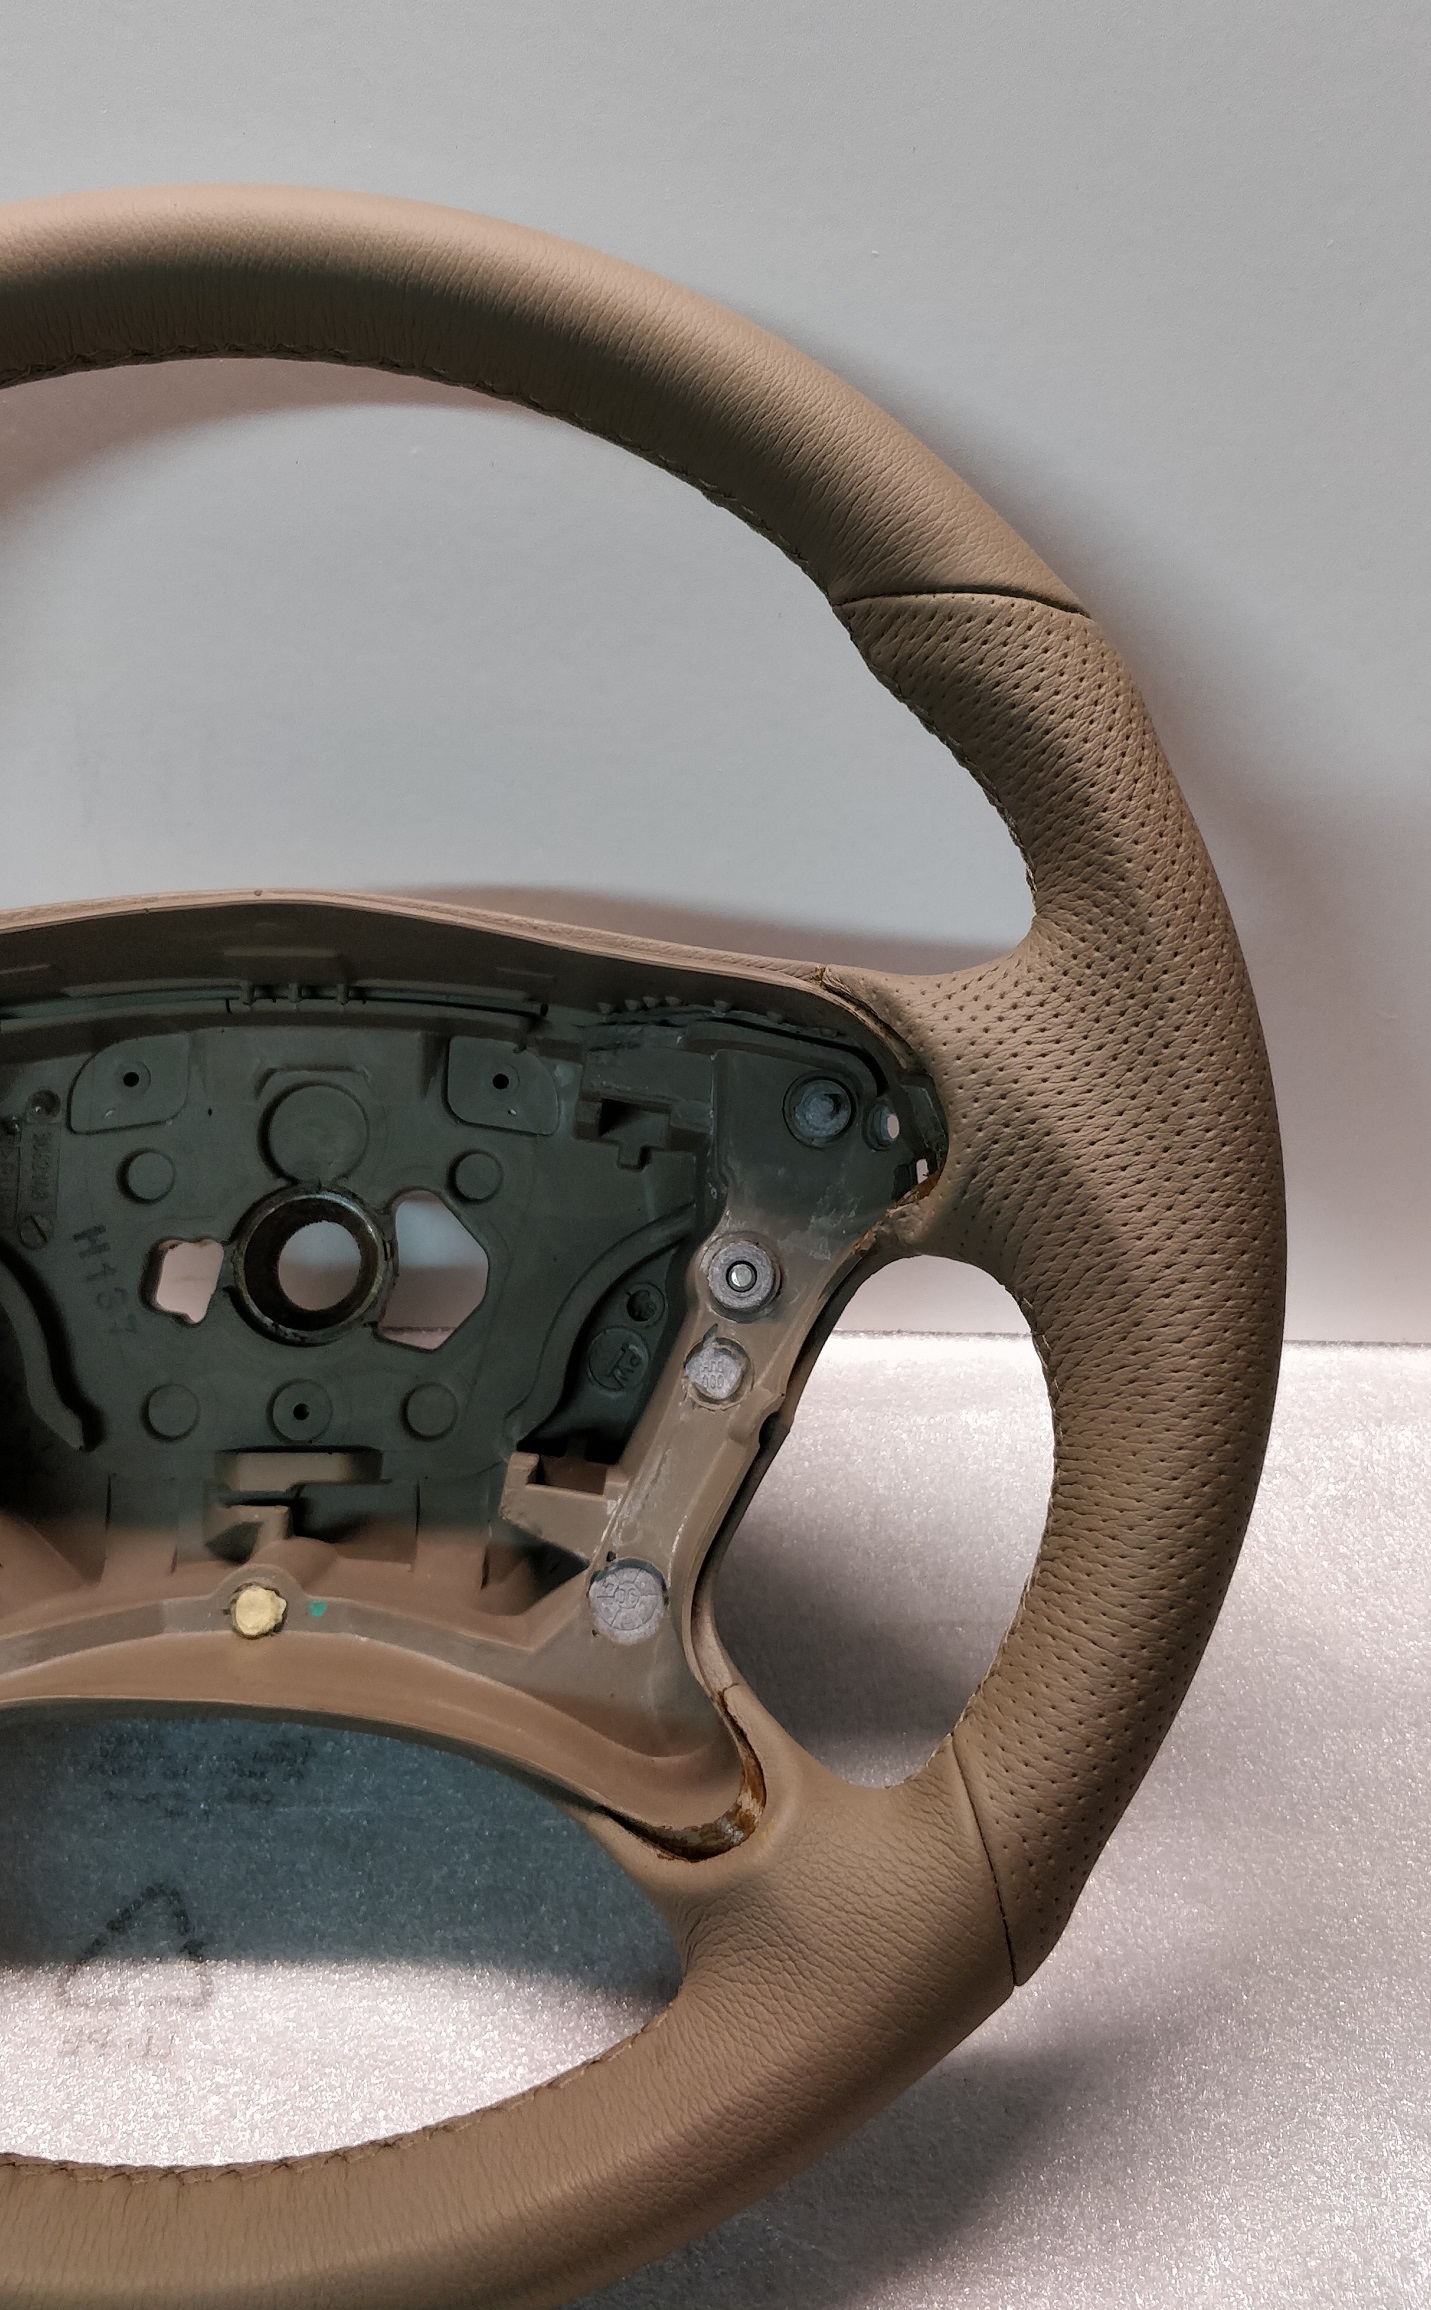 Mercedes steering wheel AMG leather GREY BEIGE W209 W211 3062148 SL R230